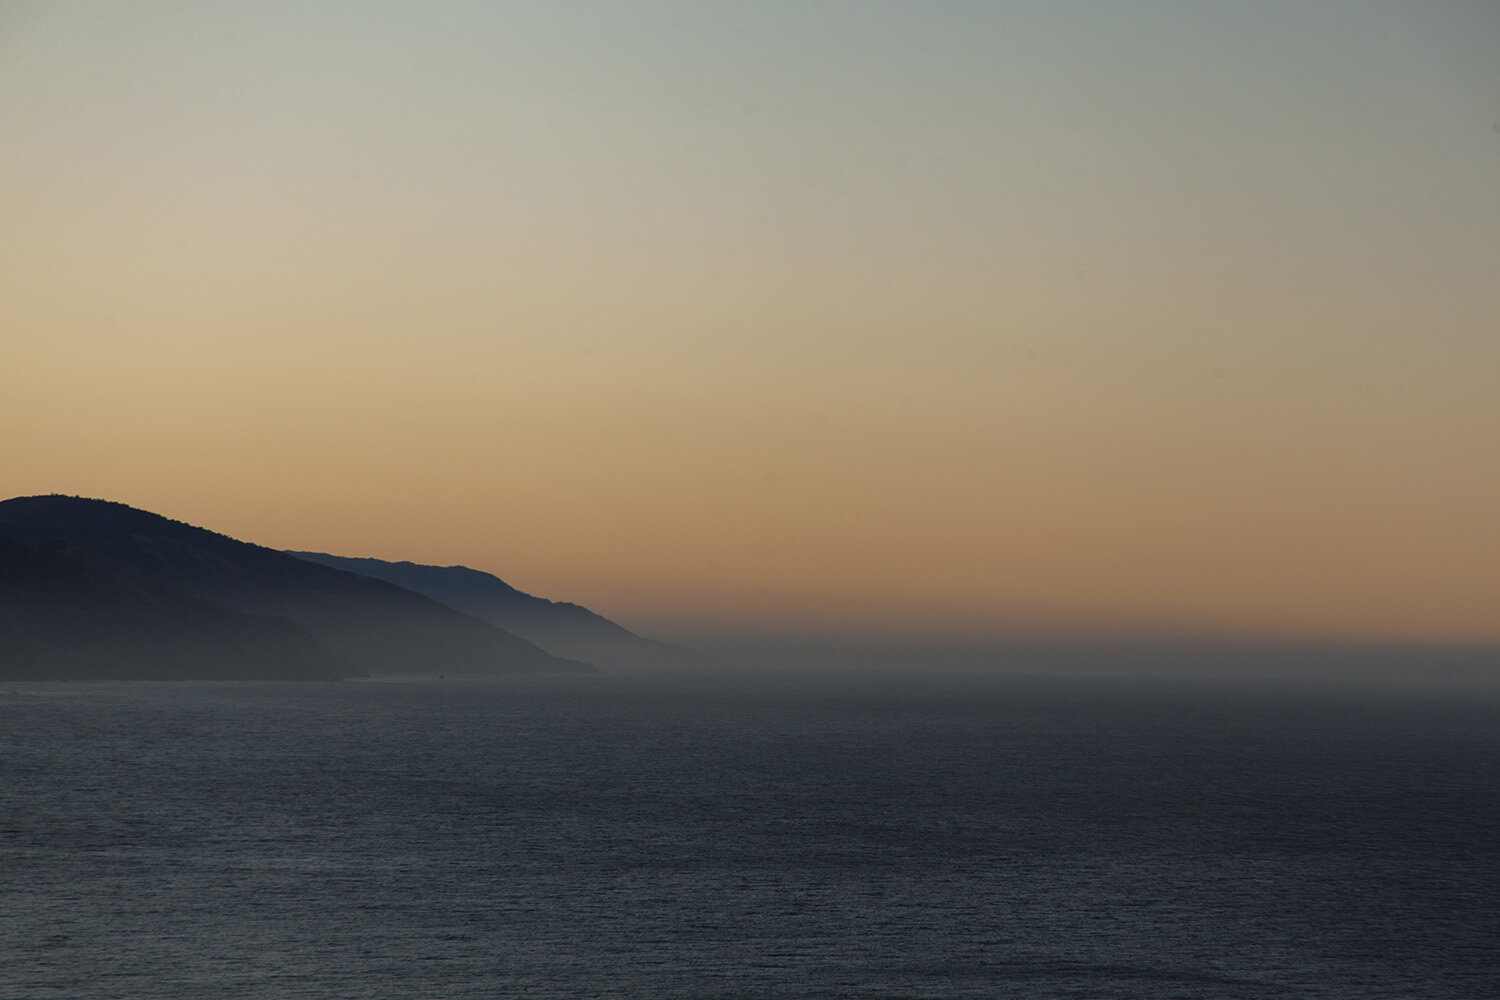  Sunrise on the Edge  California, 2019 